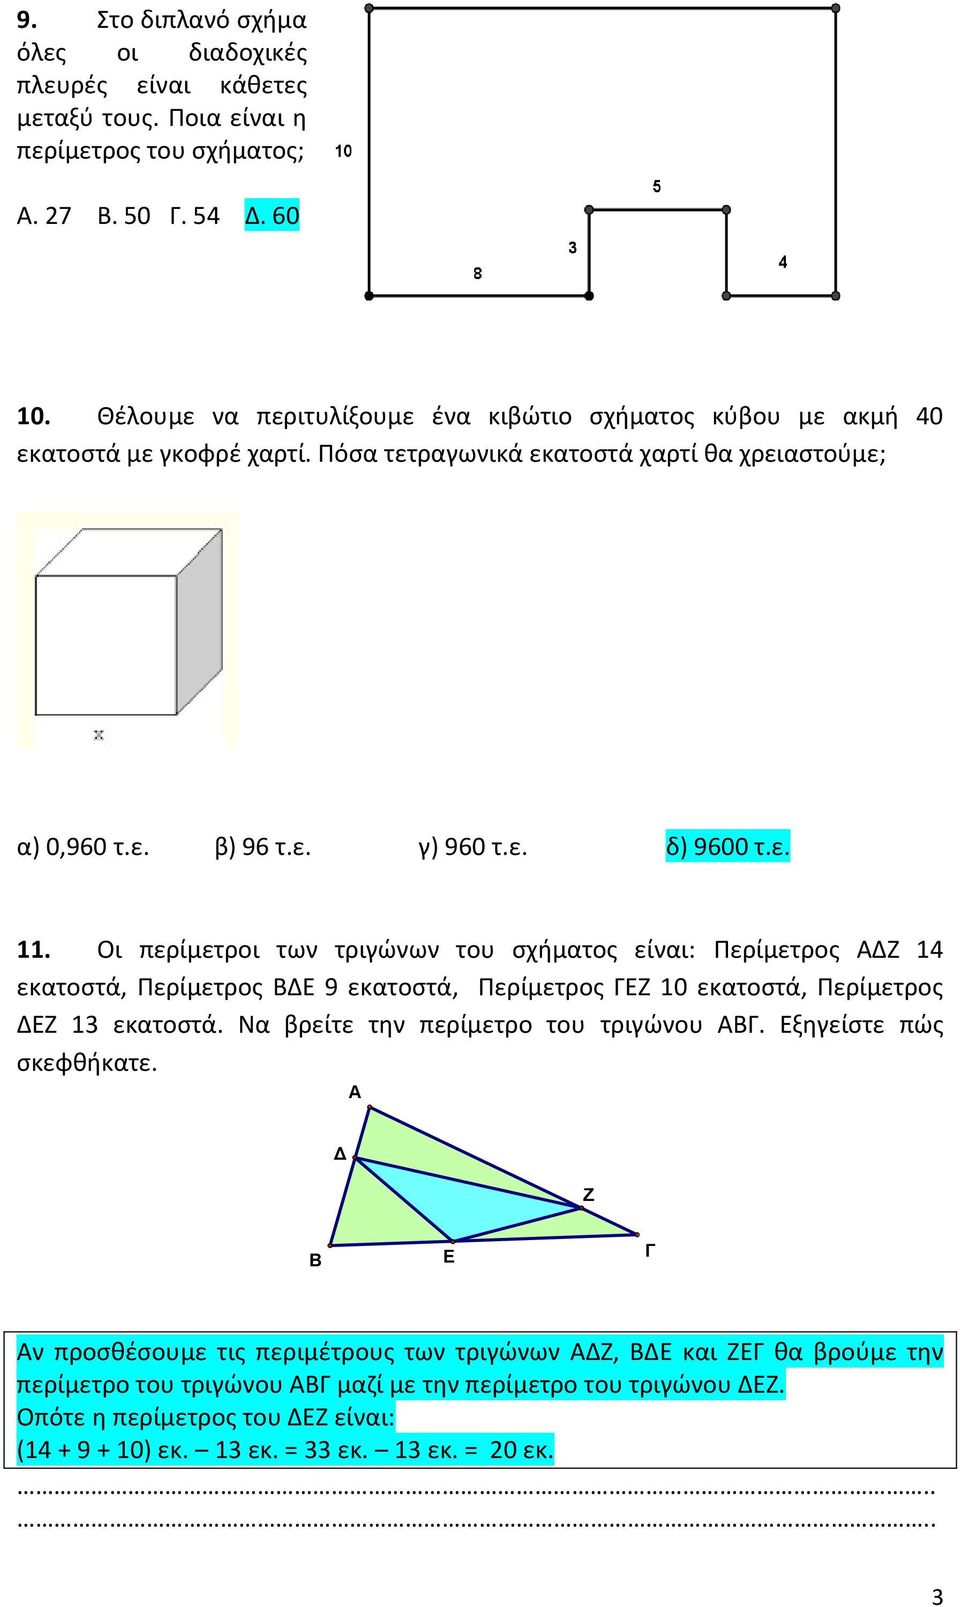 Οι περίμετροι των τριγώνων του σχήματος είναι: Περίμετρος ΑΔΖ 14 εκατοστά, Περίμετρος ΒΔΕ 9 εκατοστά, Περίμετρος ΓΕΖ 10 εκατοστά, Περίμετρος ΔΕΖ 13 εκατοστά. Να βρείτε την περίμετρο του τριγώνου ΑΒΓ.